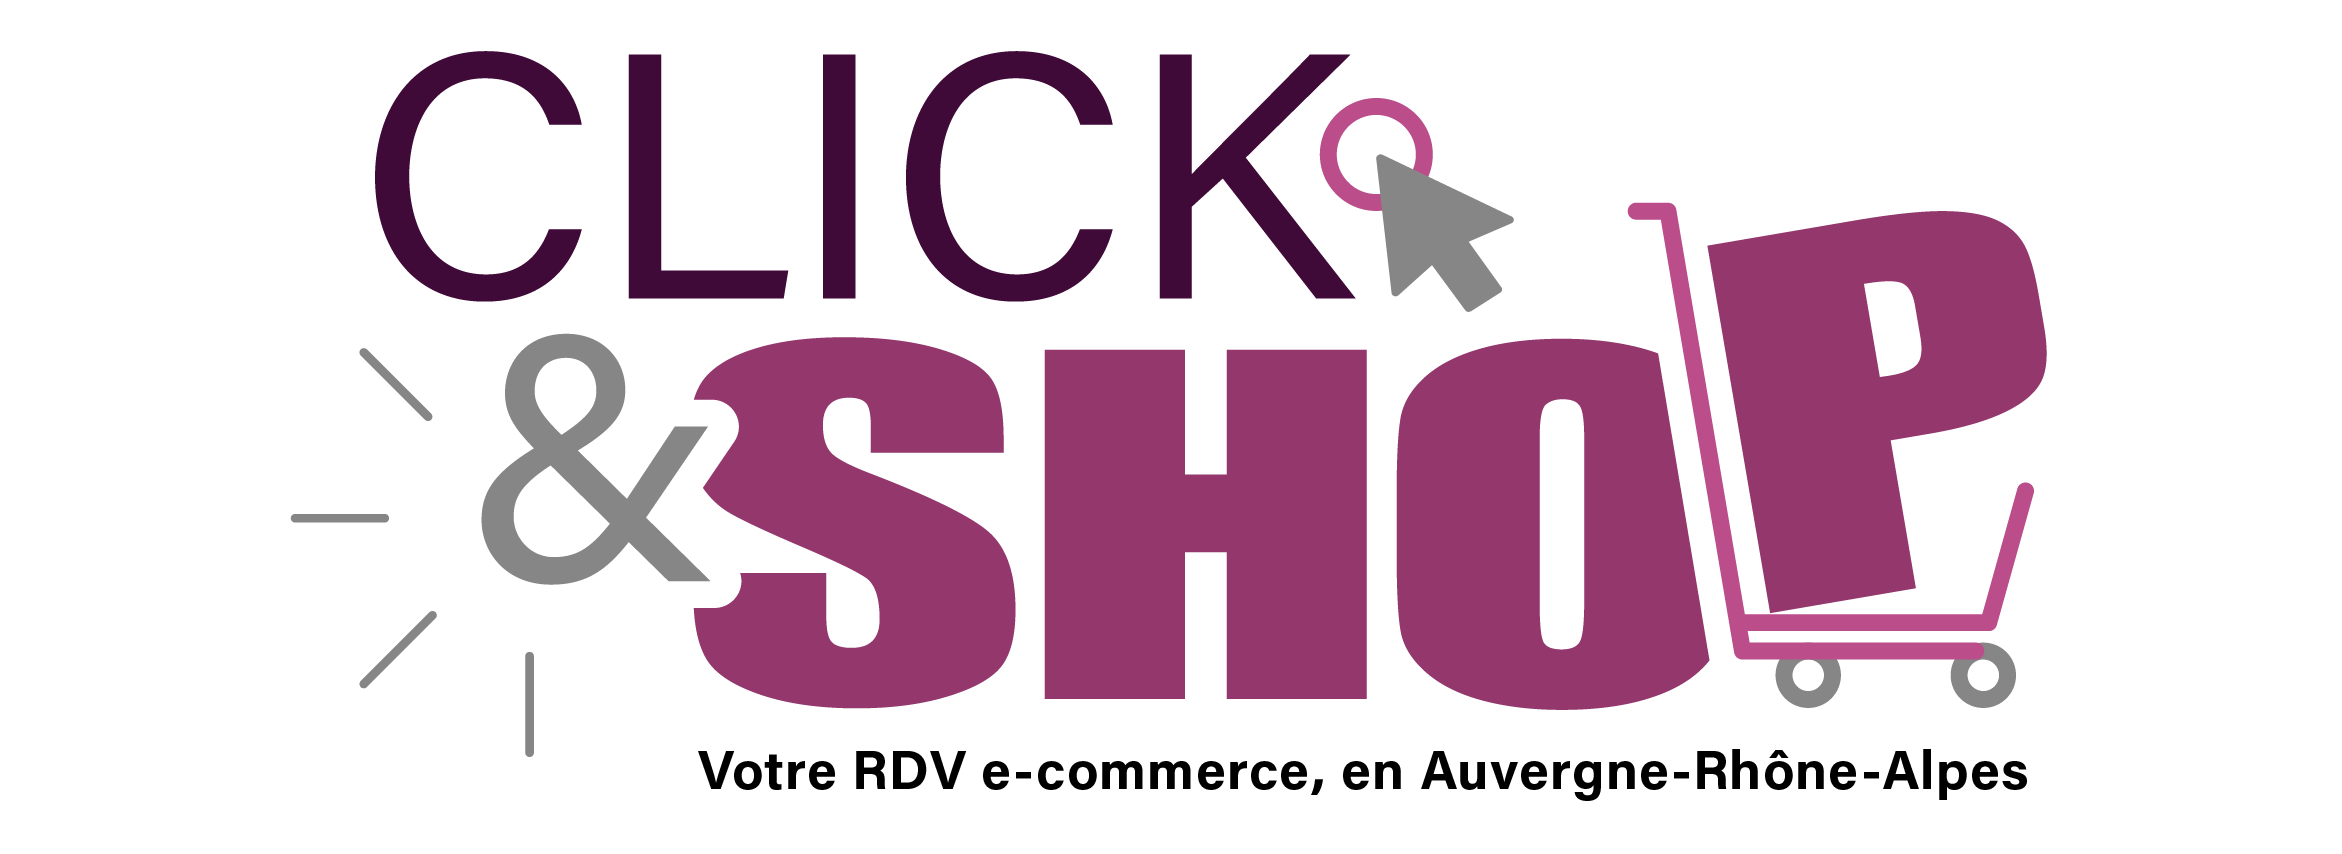 salon du e-commerce Click & Shop